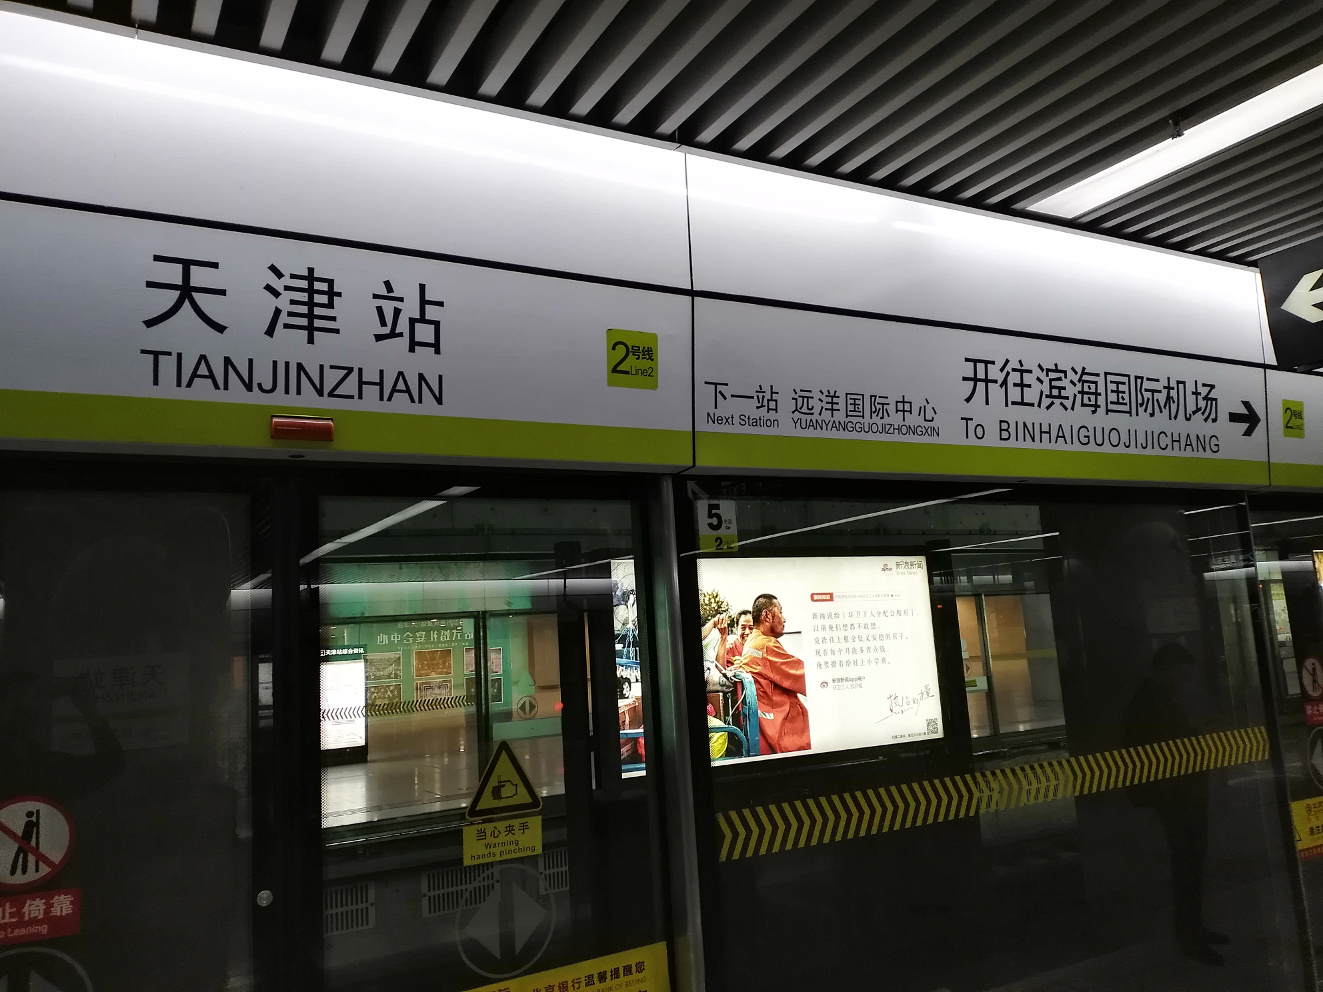 天津站不用出站,直接到地下就是地铁,地铁不用换乘可以直接到达机场